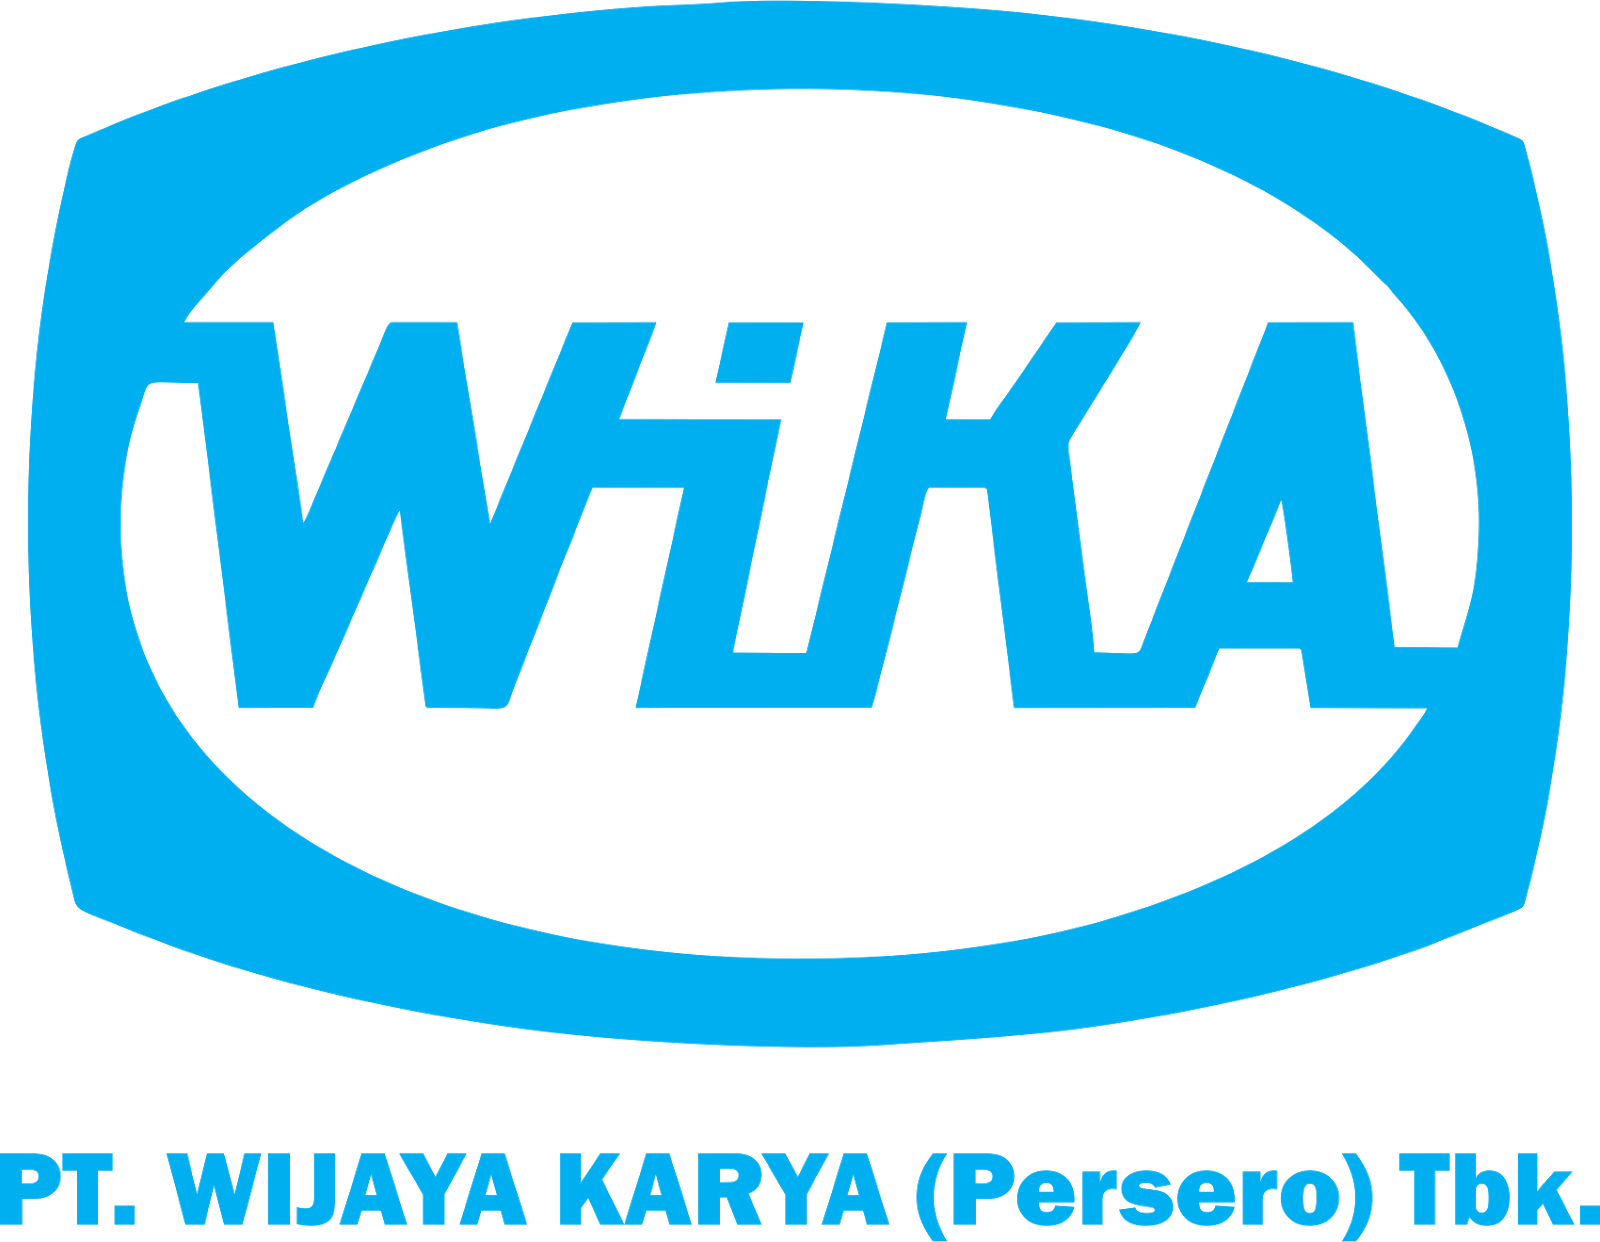 徽標與徽標：印度尼西亞大型建築公司Wika的主要徽標使用徽標。